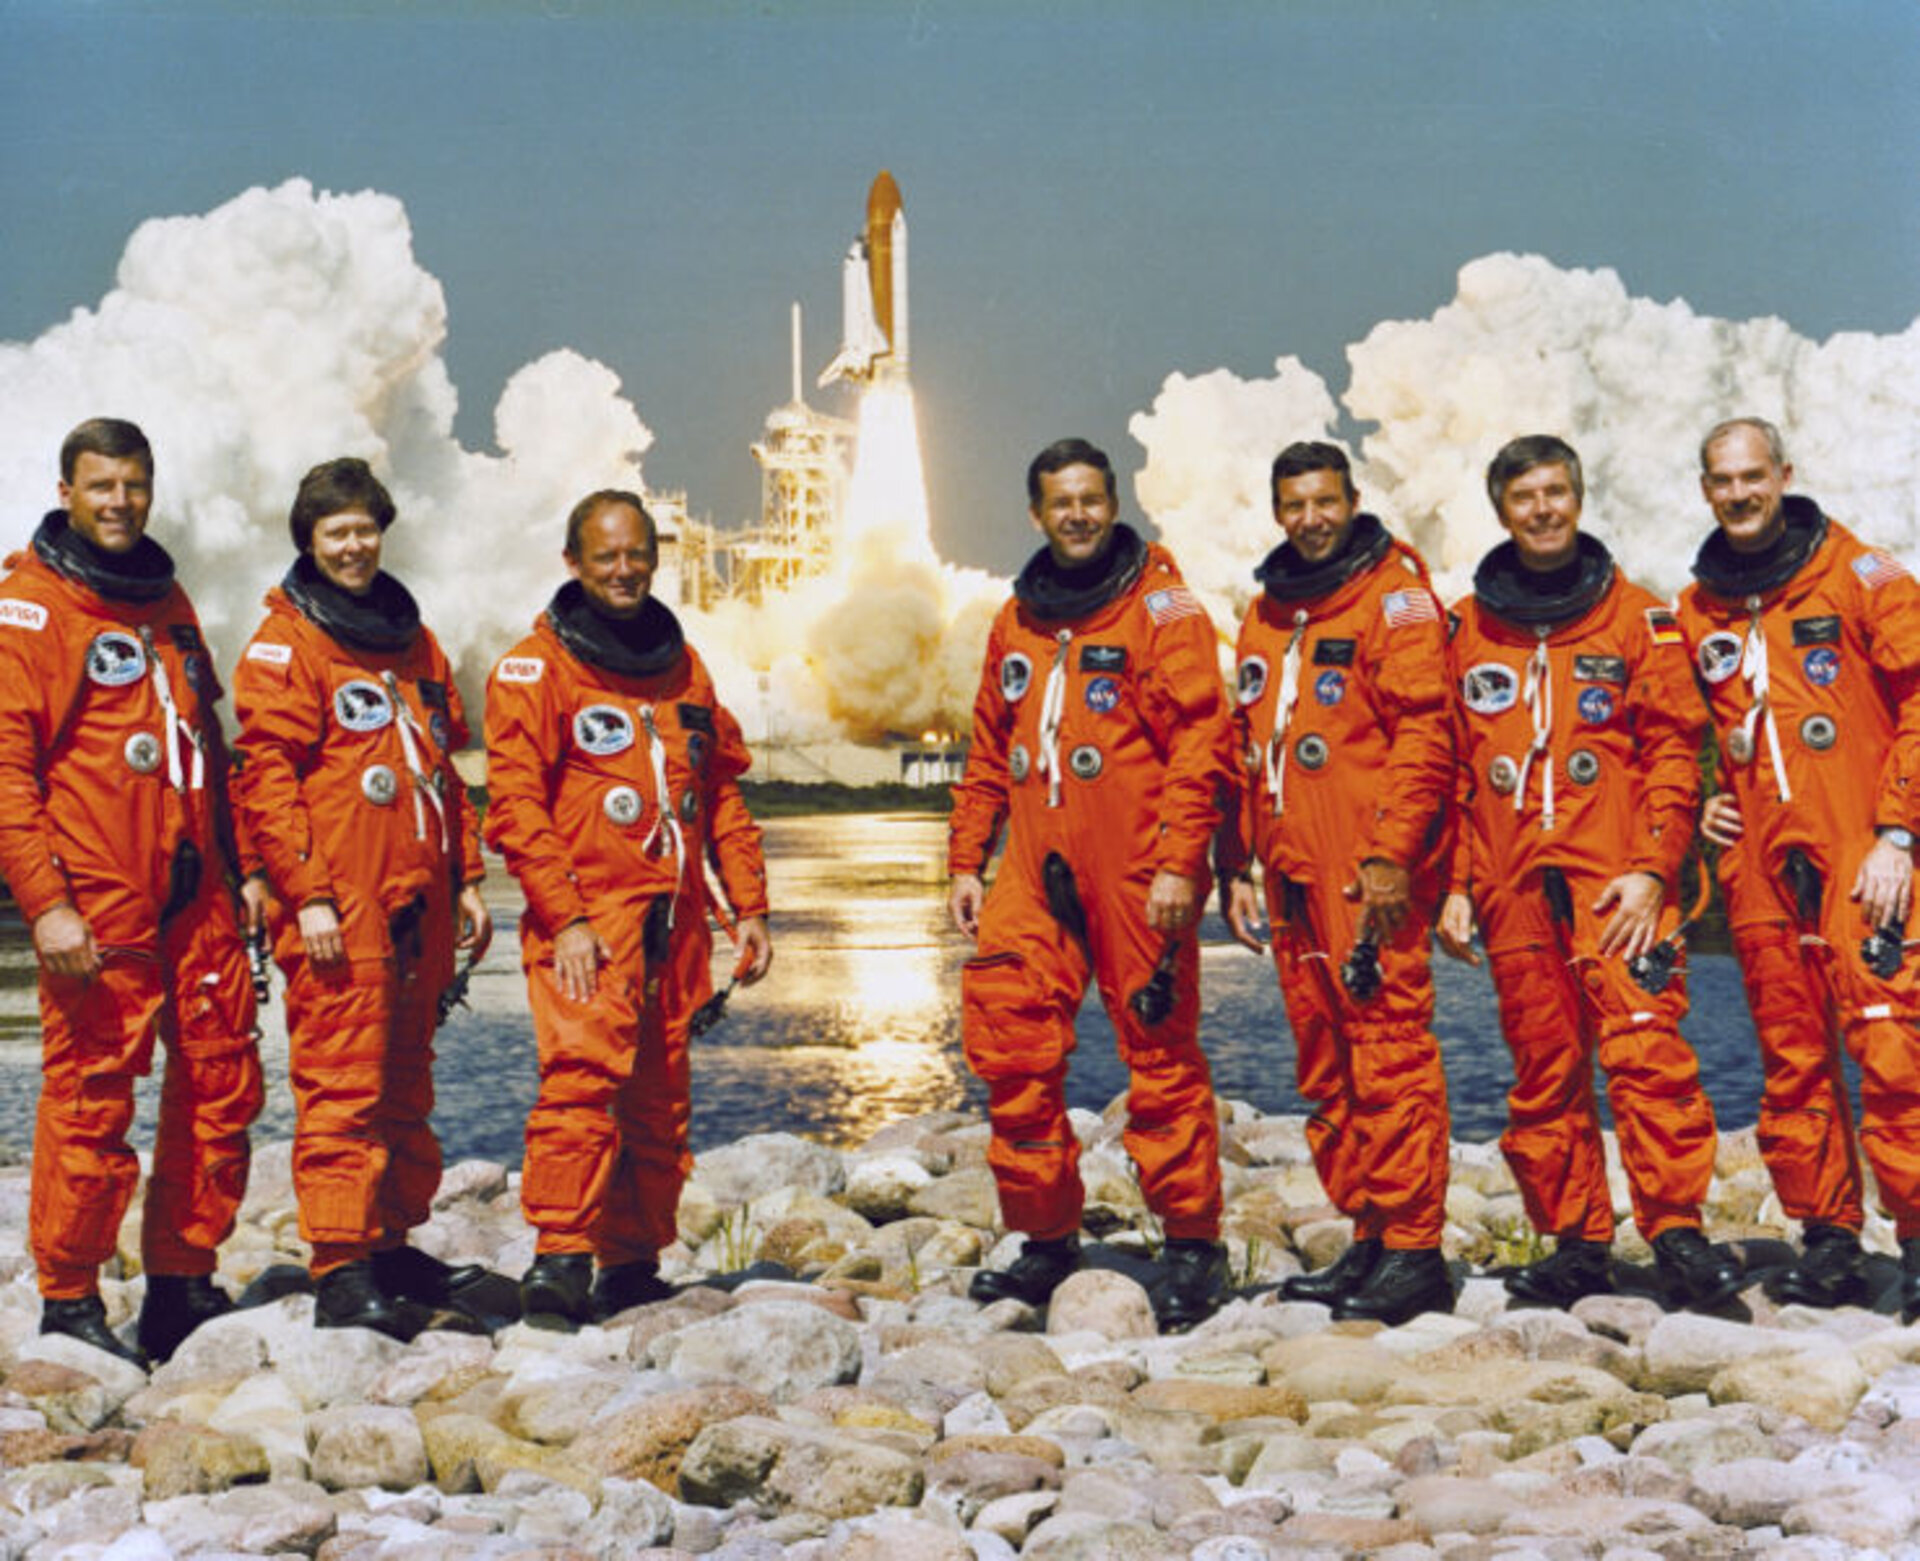 STS-42 crew with R. Grabe, S. Oswald, N. Thagard, D. Hilmers, W. Readdy, R. Bondar and U. Merbold